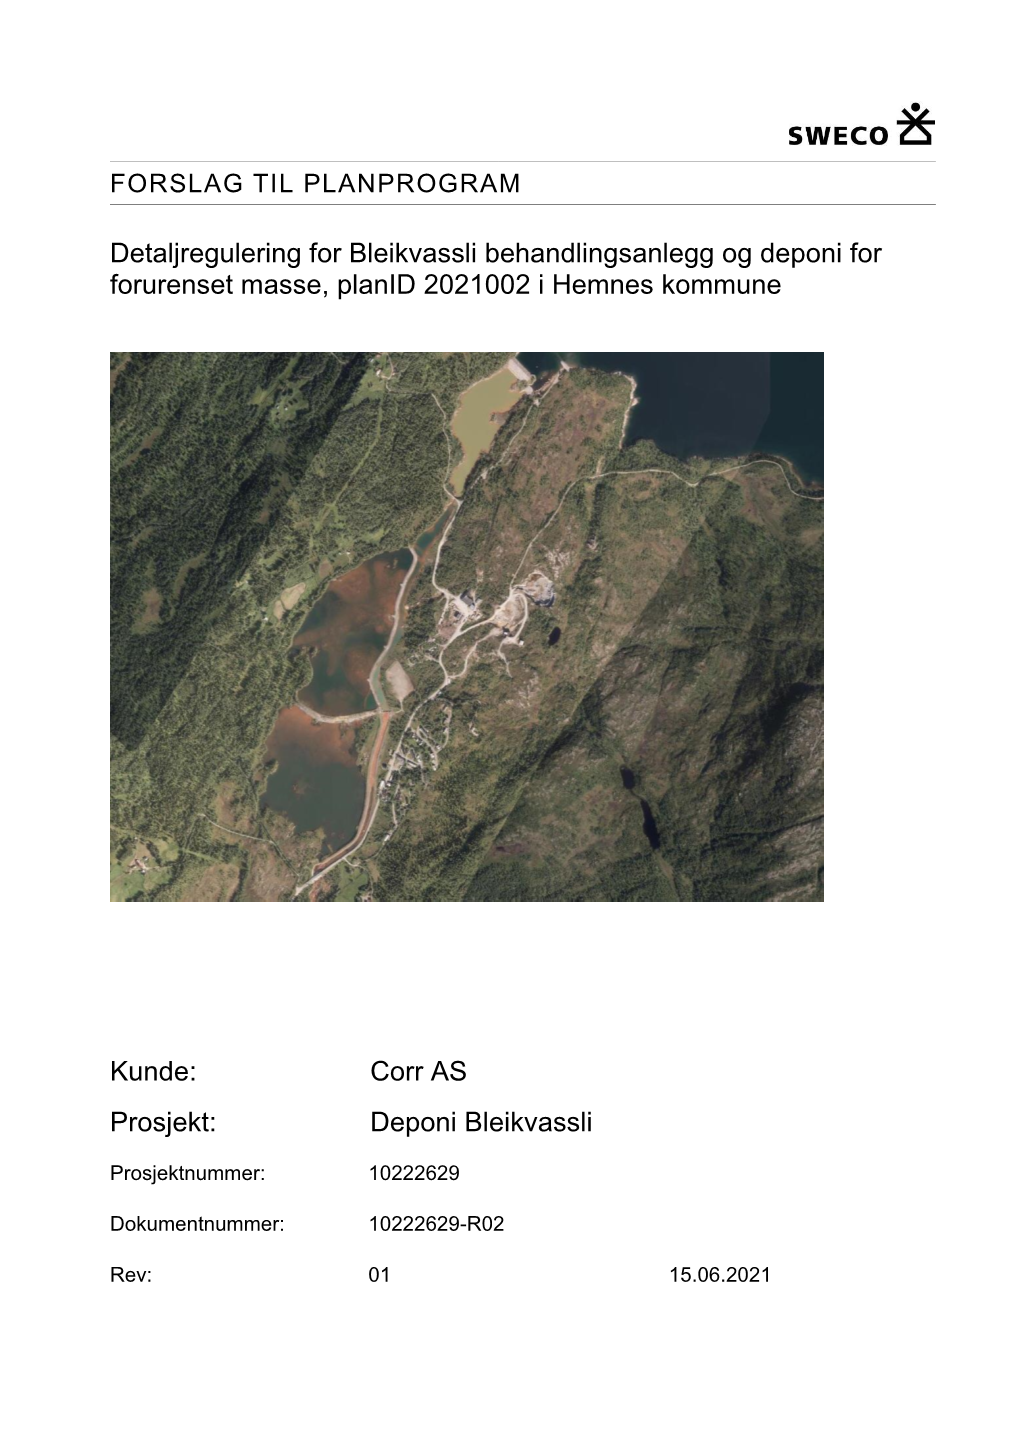 Detaljregulering for Bleikvassli Behandlingsanlegg Og Deponi for Forurenset Masse, Planid 2021002 I Hemnes Kommune